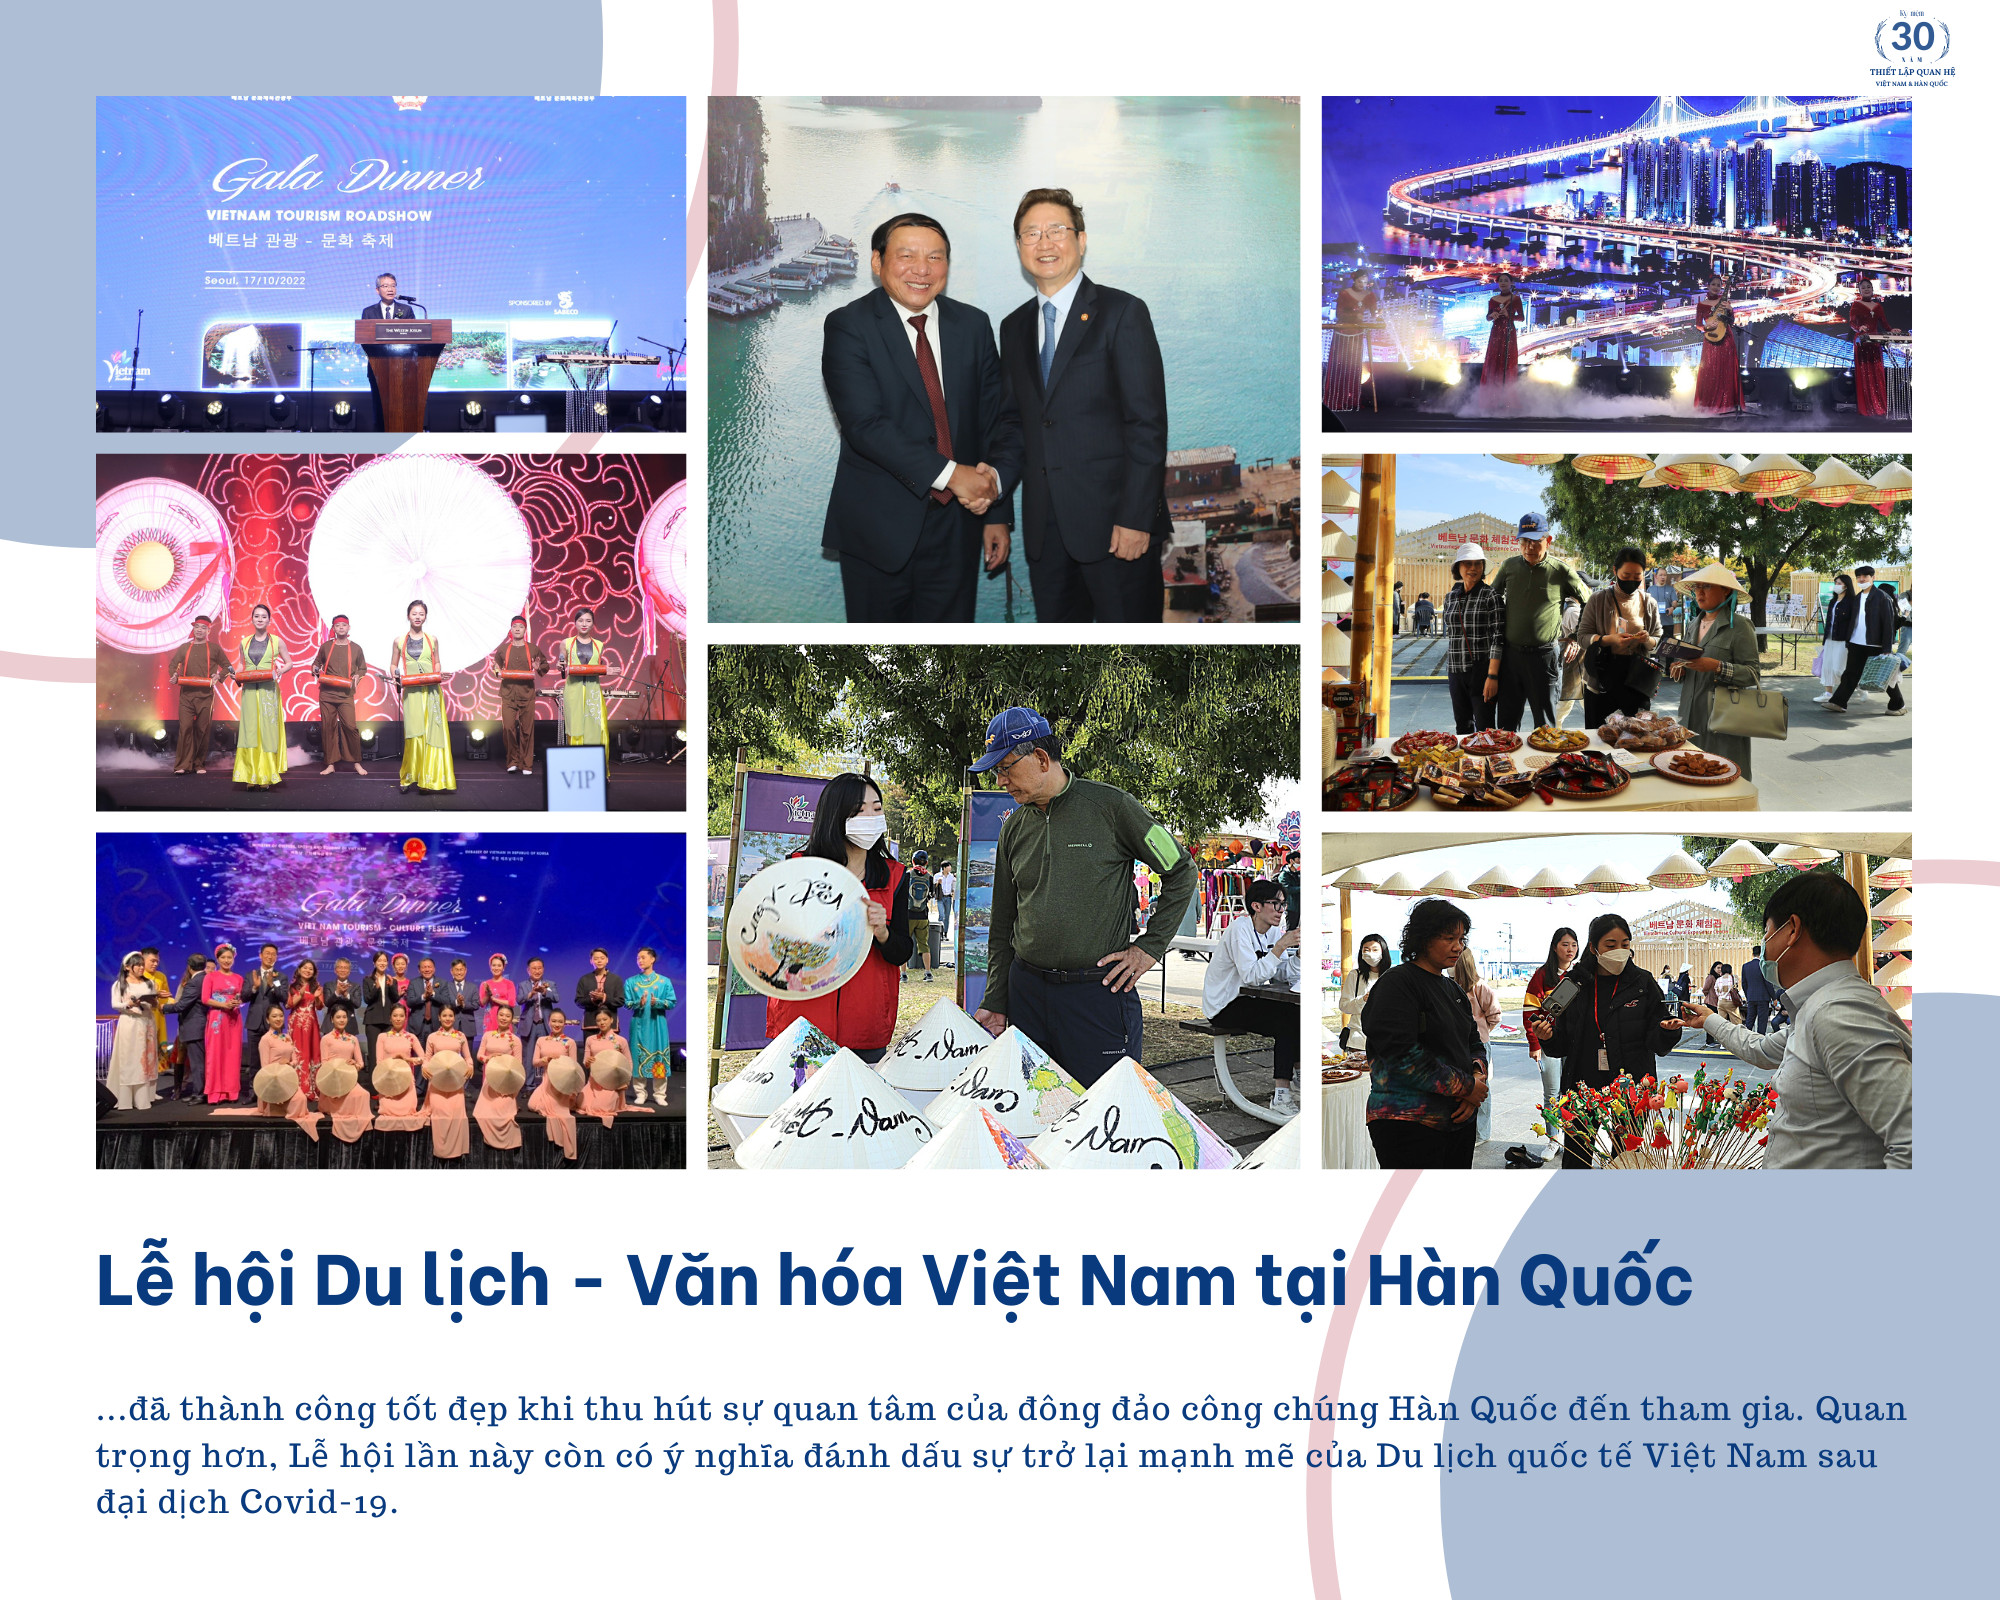 Hợp tác Văn hóa - Thể thao - Du lịch giữa Việt Nam - Hàn Quốc: Cùng nhau nhanh hơn, cao hơn, xa hơn - Ảnh 7.